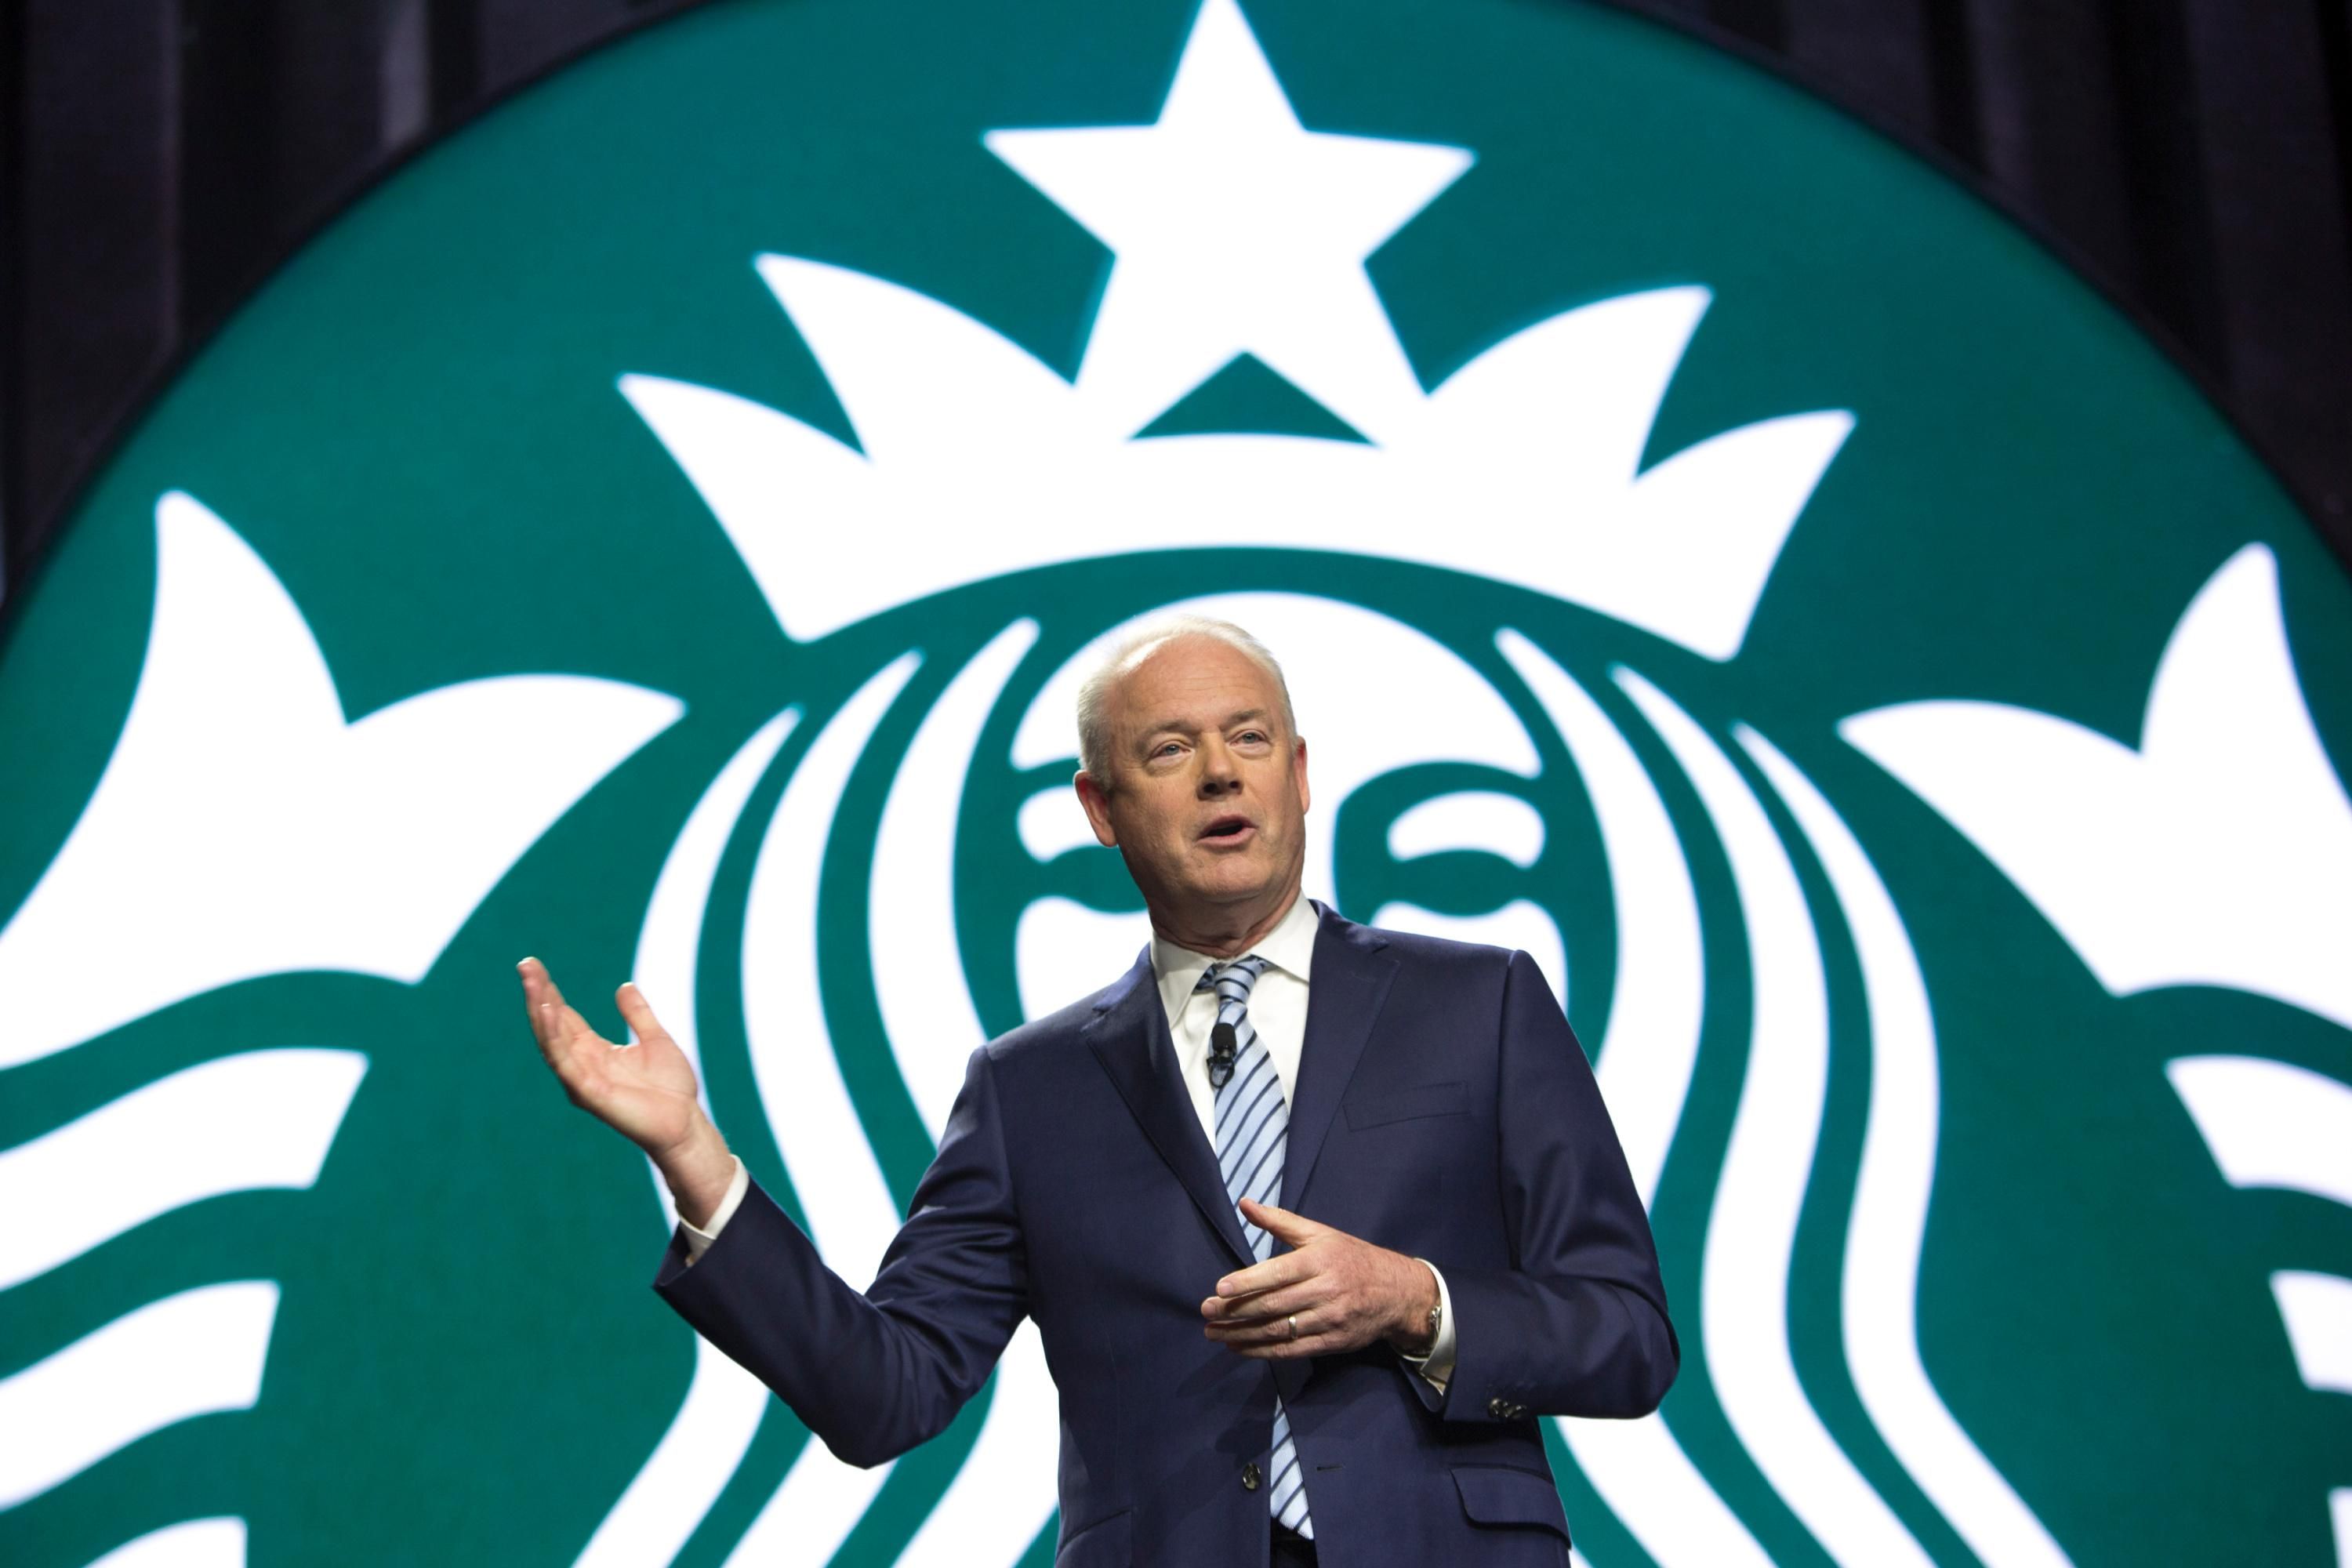 Starbucks CEO Kevin Johnson speaks to shareholders